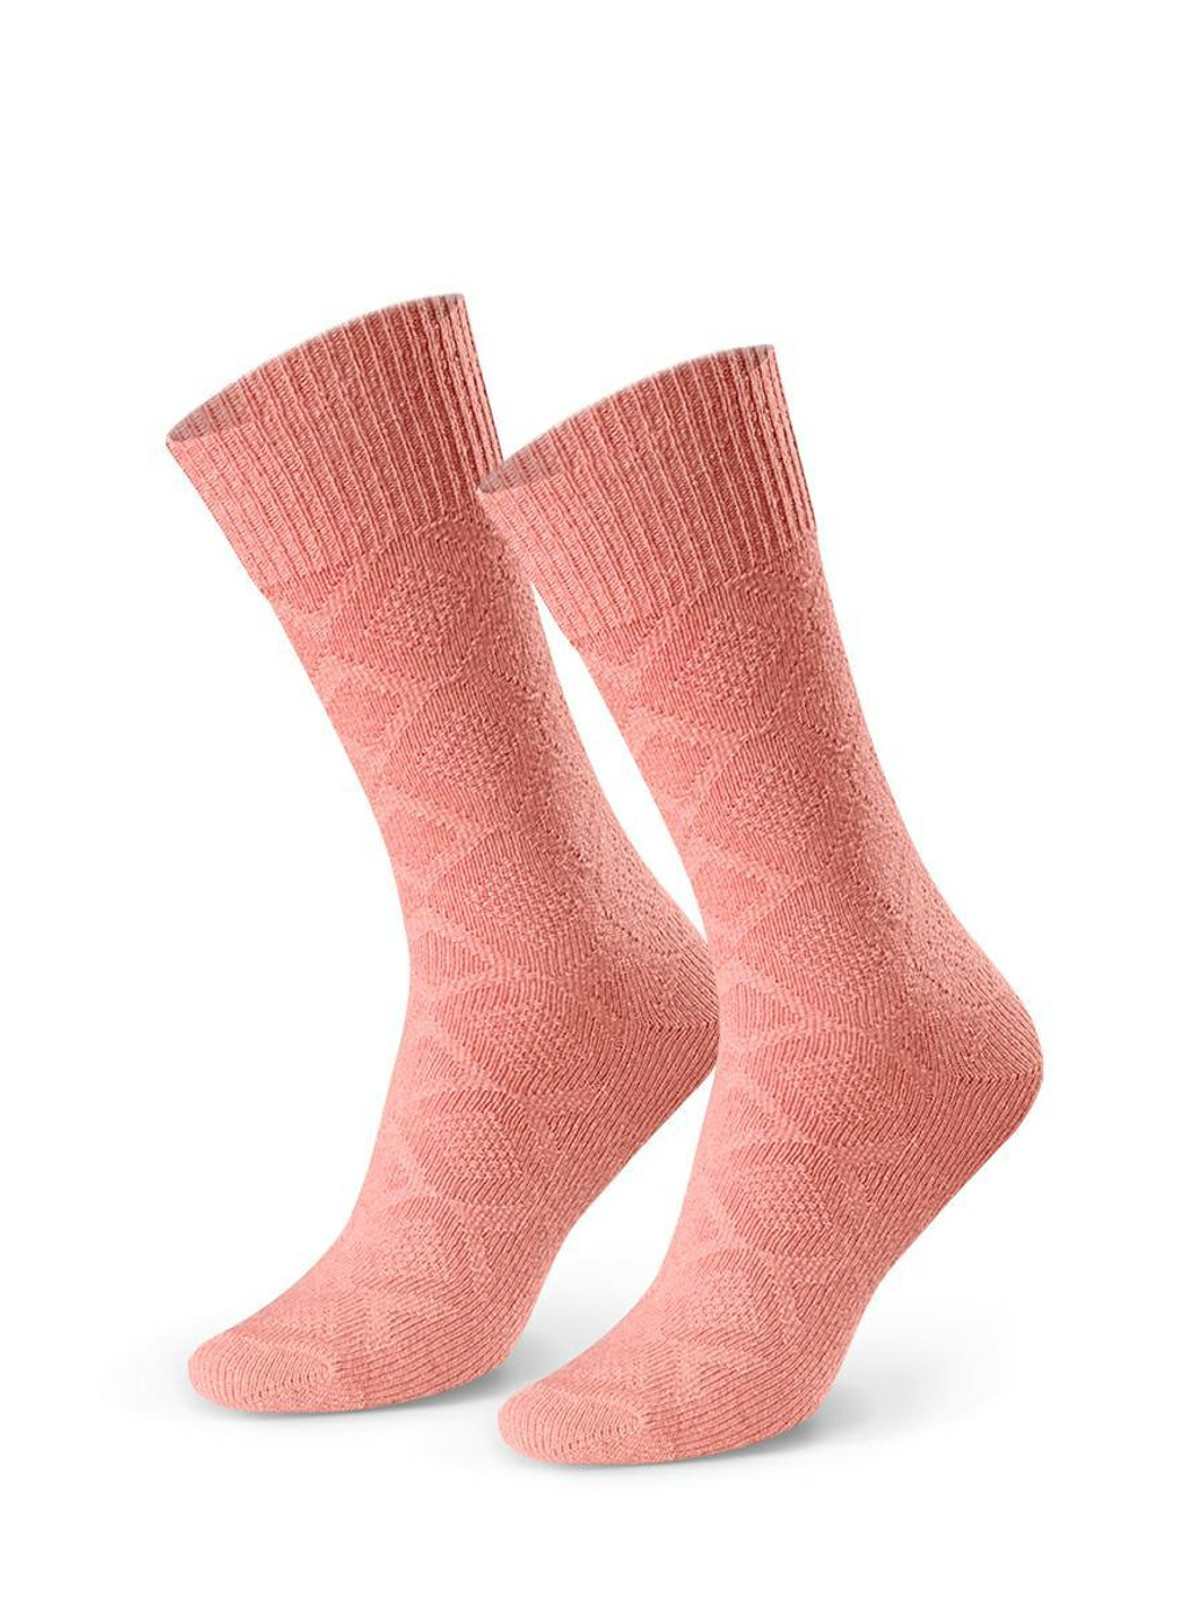 Dámské vlněné vzorované ponožky Steven art.093 35-40 Růžová 35-37